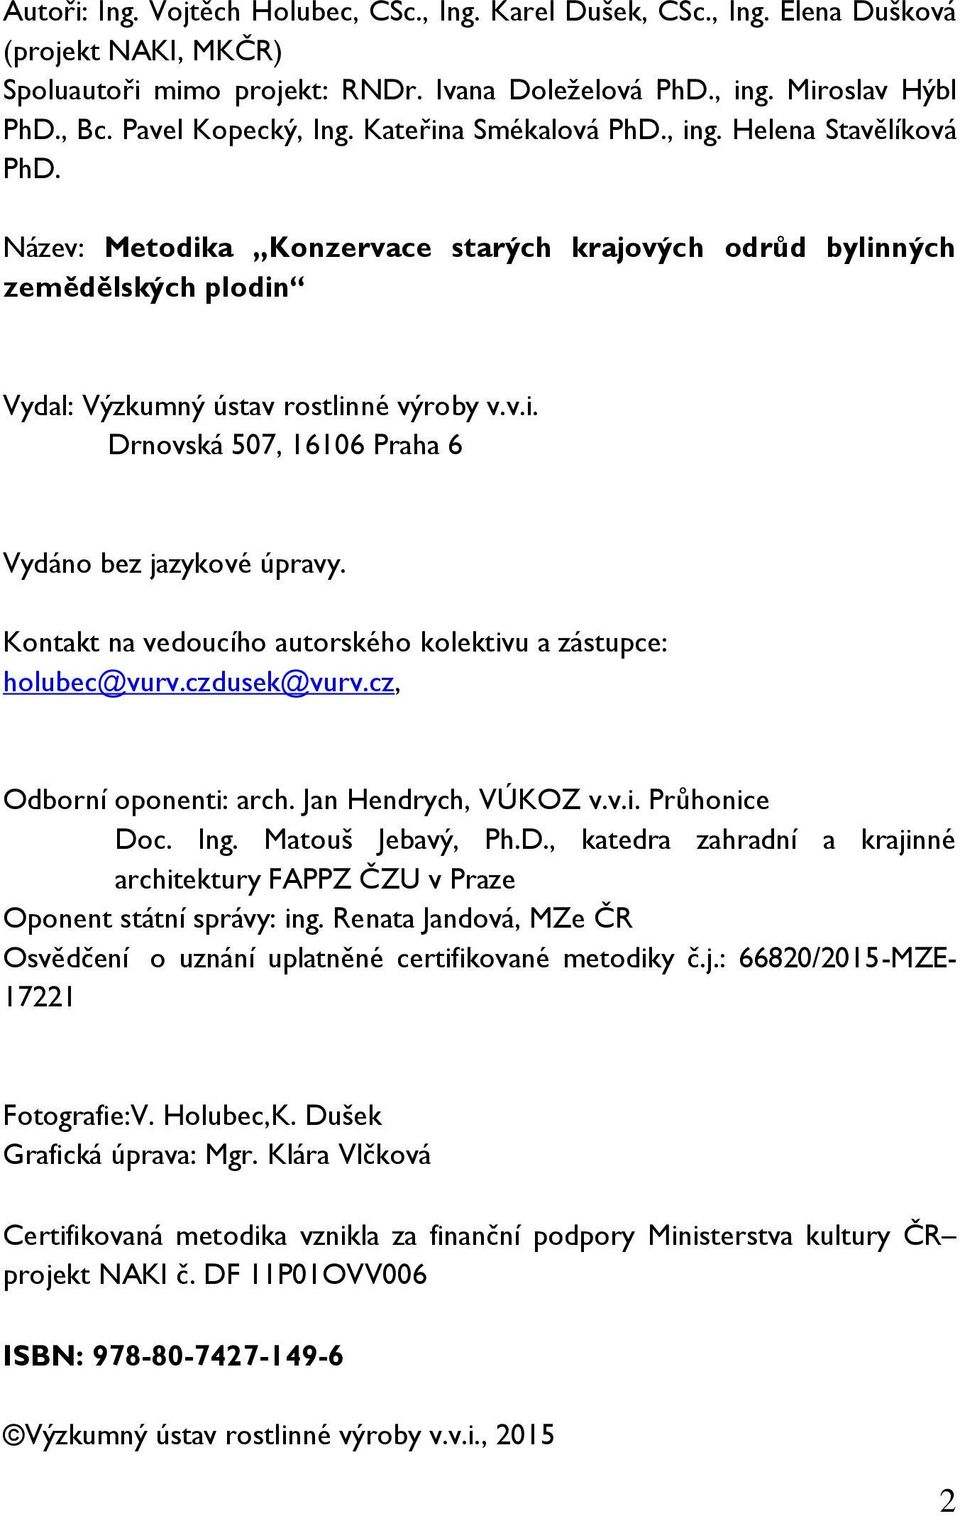 Kontakt na vedoucího autorského kolektivu a zástupce: holubec@vurv.czdusek@vurv.cz, Odborní oponenti: arch. Jan Hendrych, VÚKOZ v.v.i. Průhonice Do